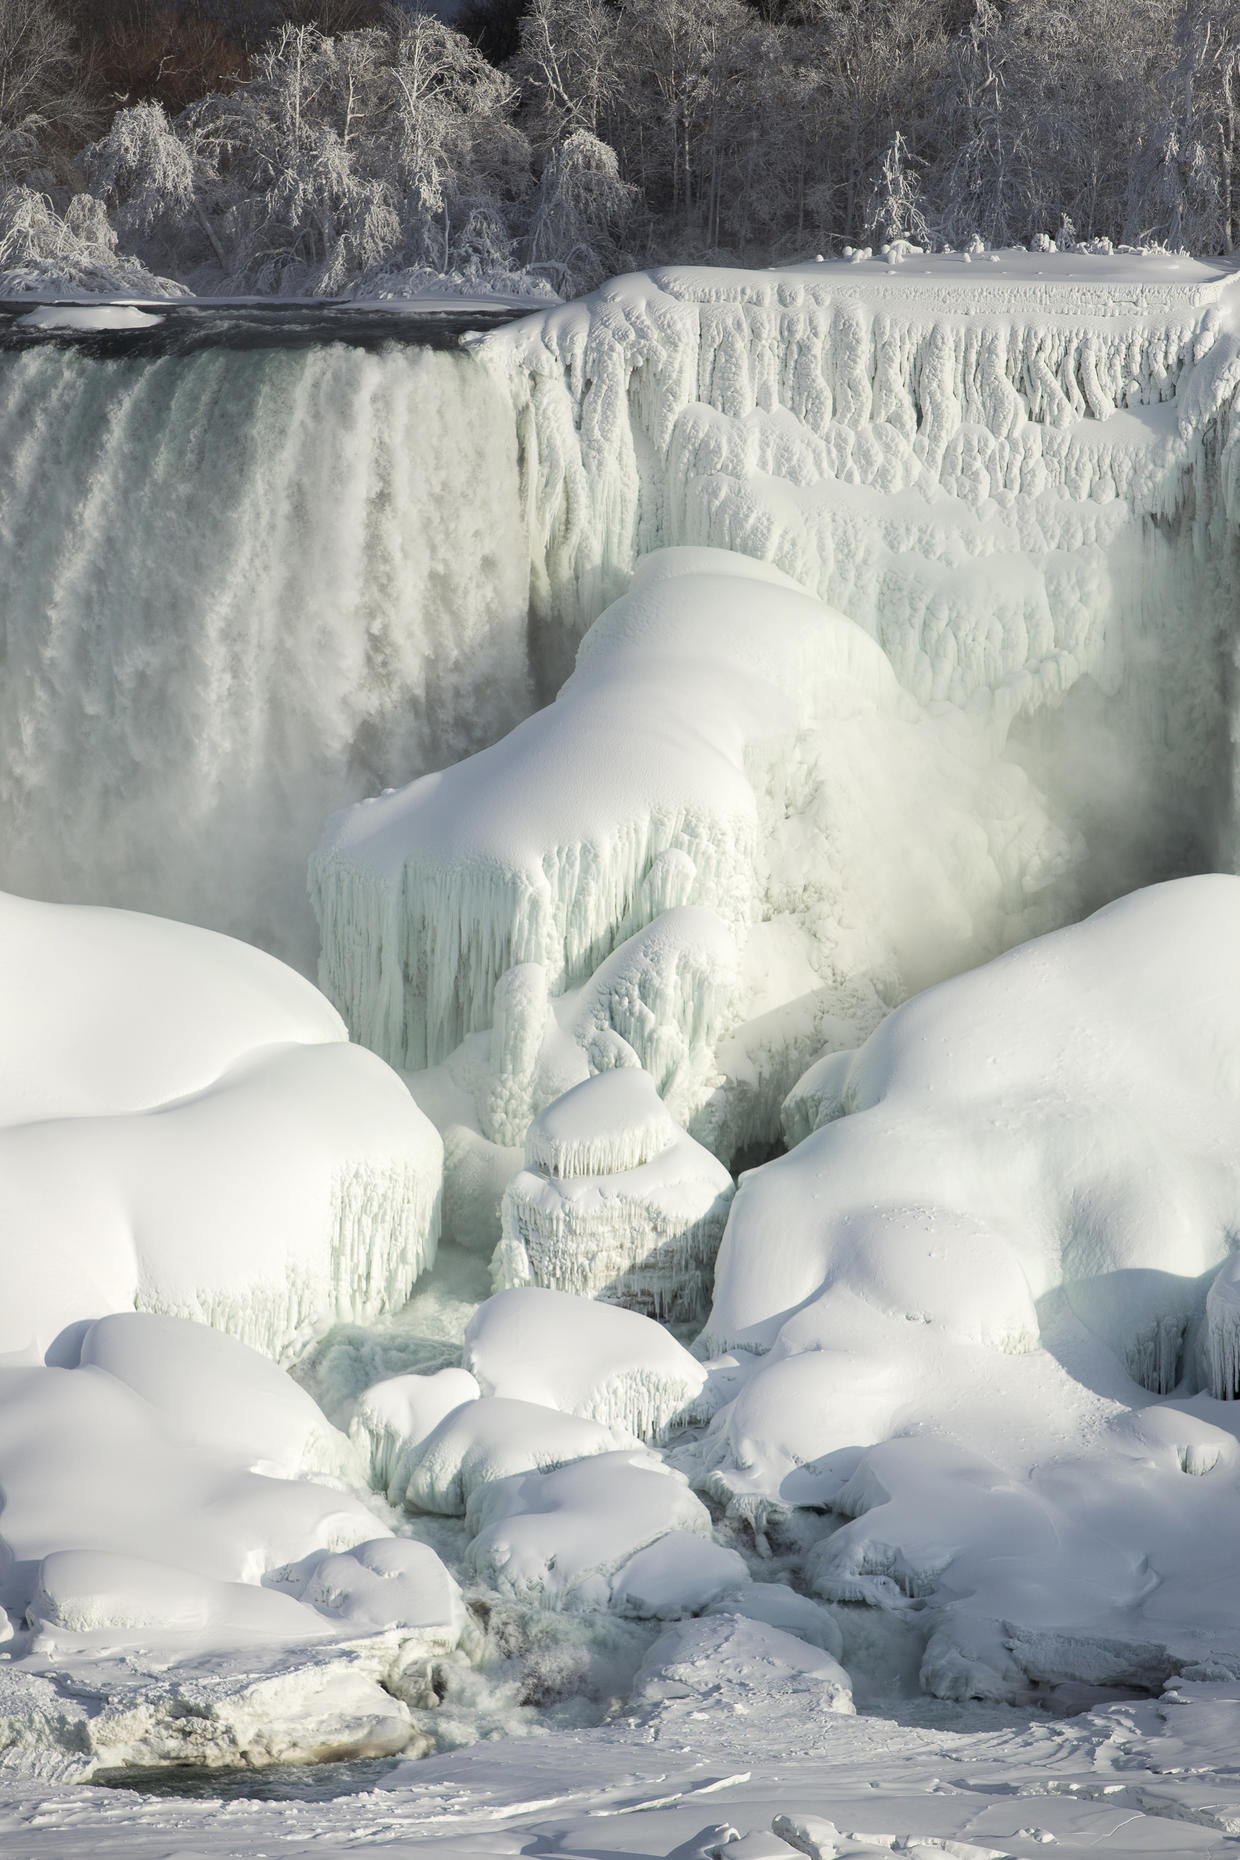 Niagara Falls beautiful frozen winter wonderland CBS News